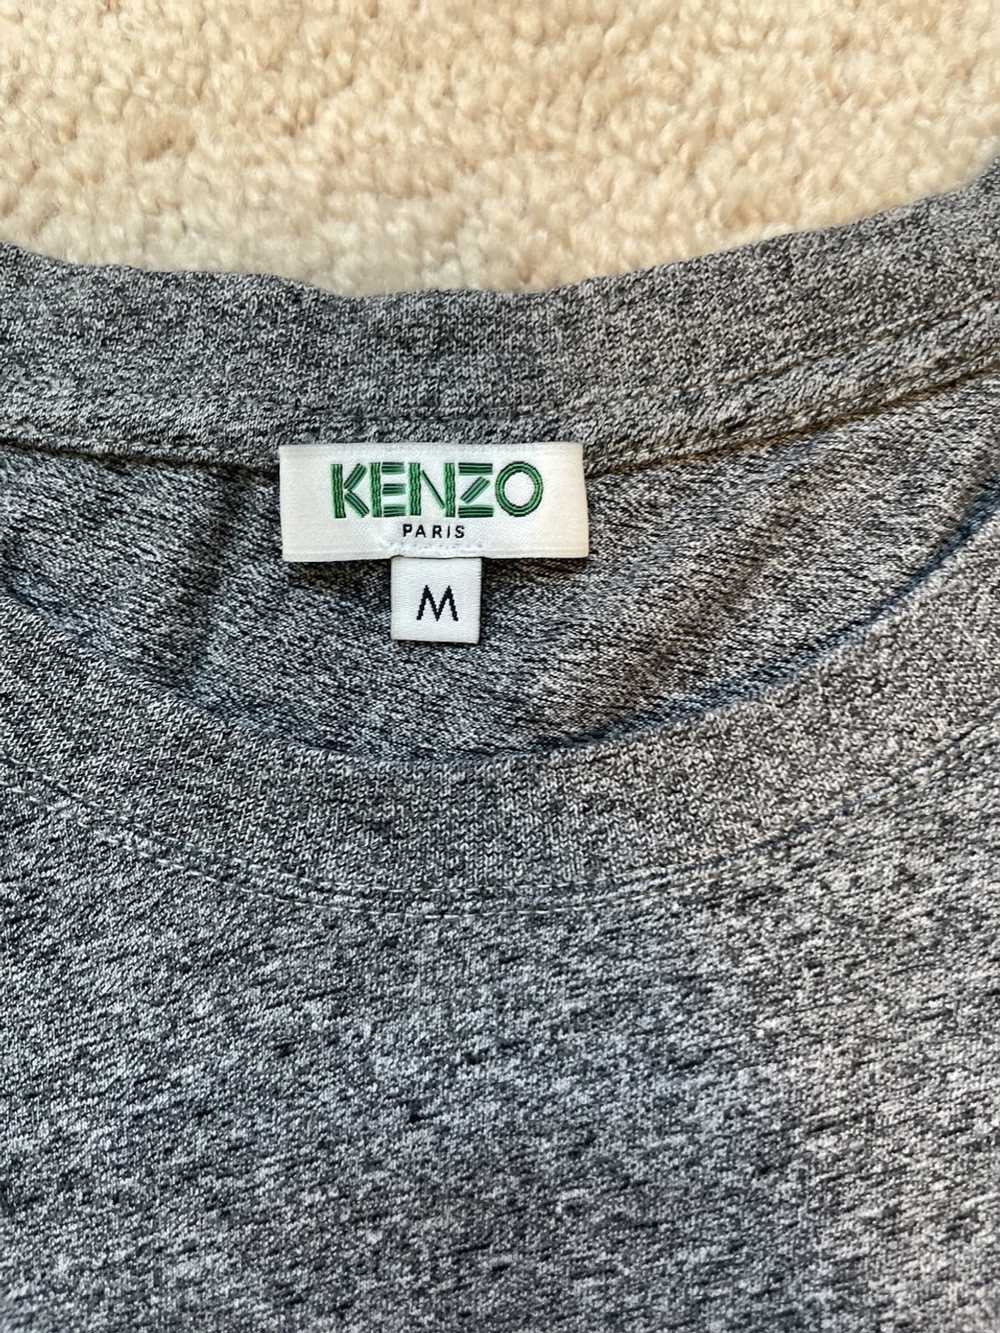 Kenzo Kenzo Paris tiger t shirt grey - image 3